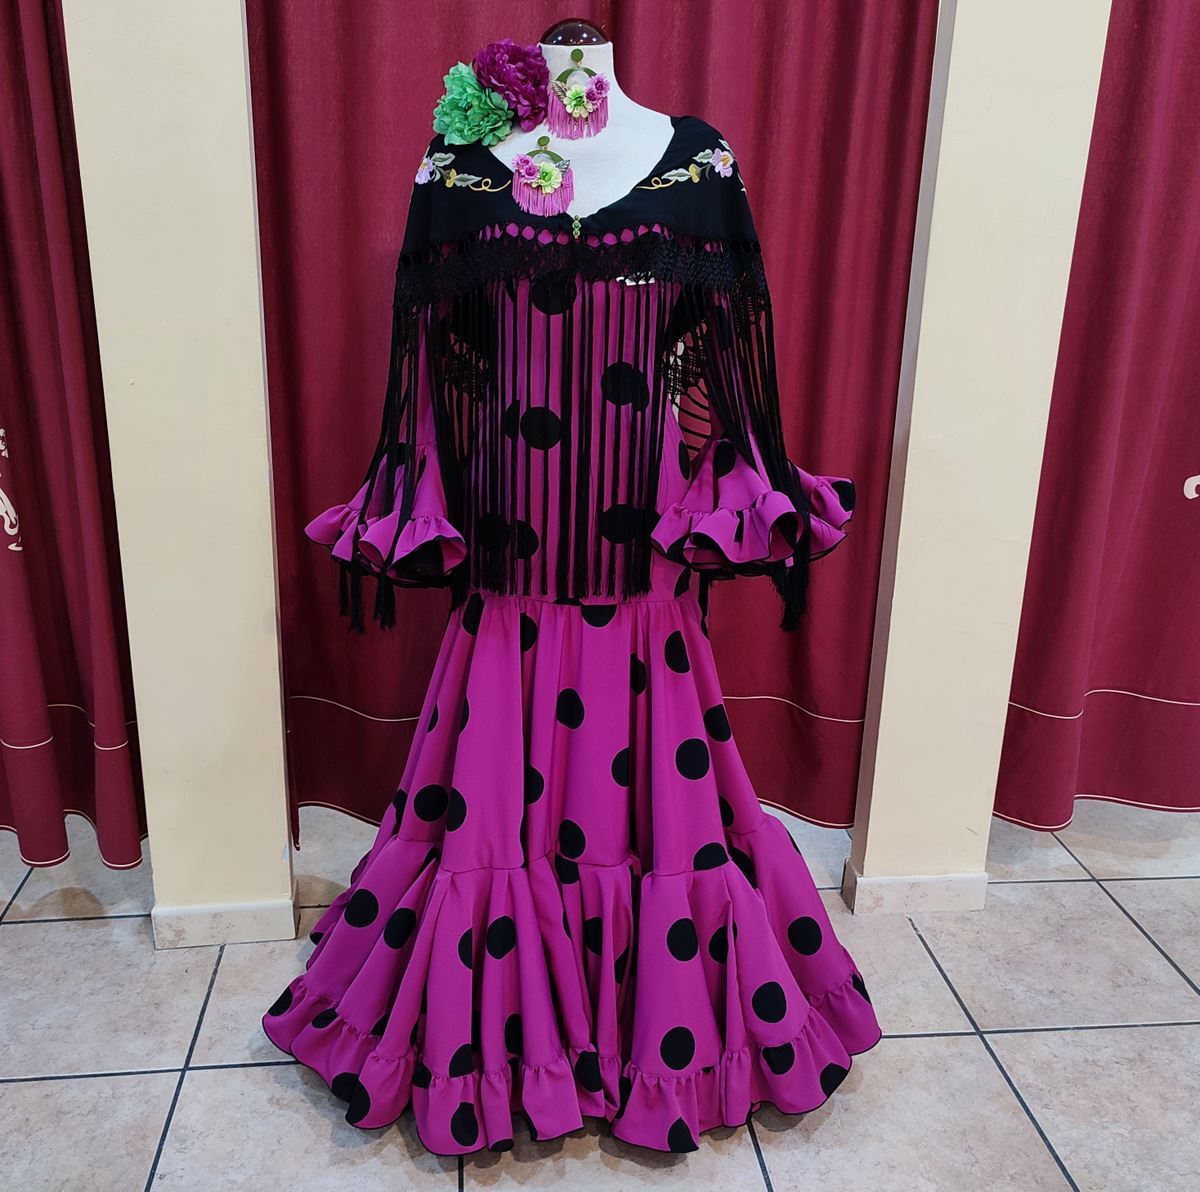 Vestido de Flamenca / Sevillana para Mujer Color Negro y Violeta con Lunares